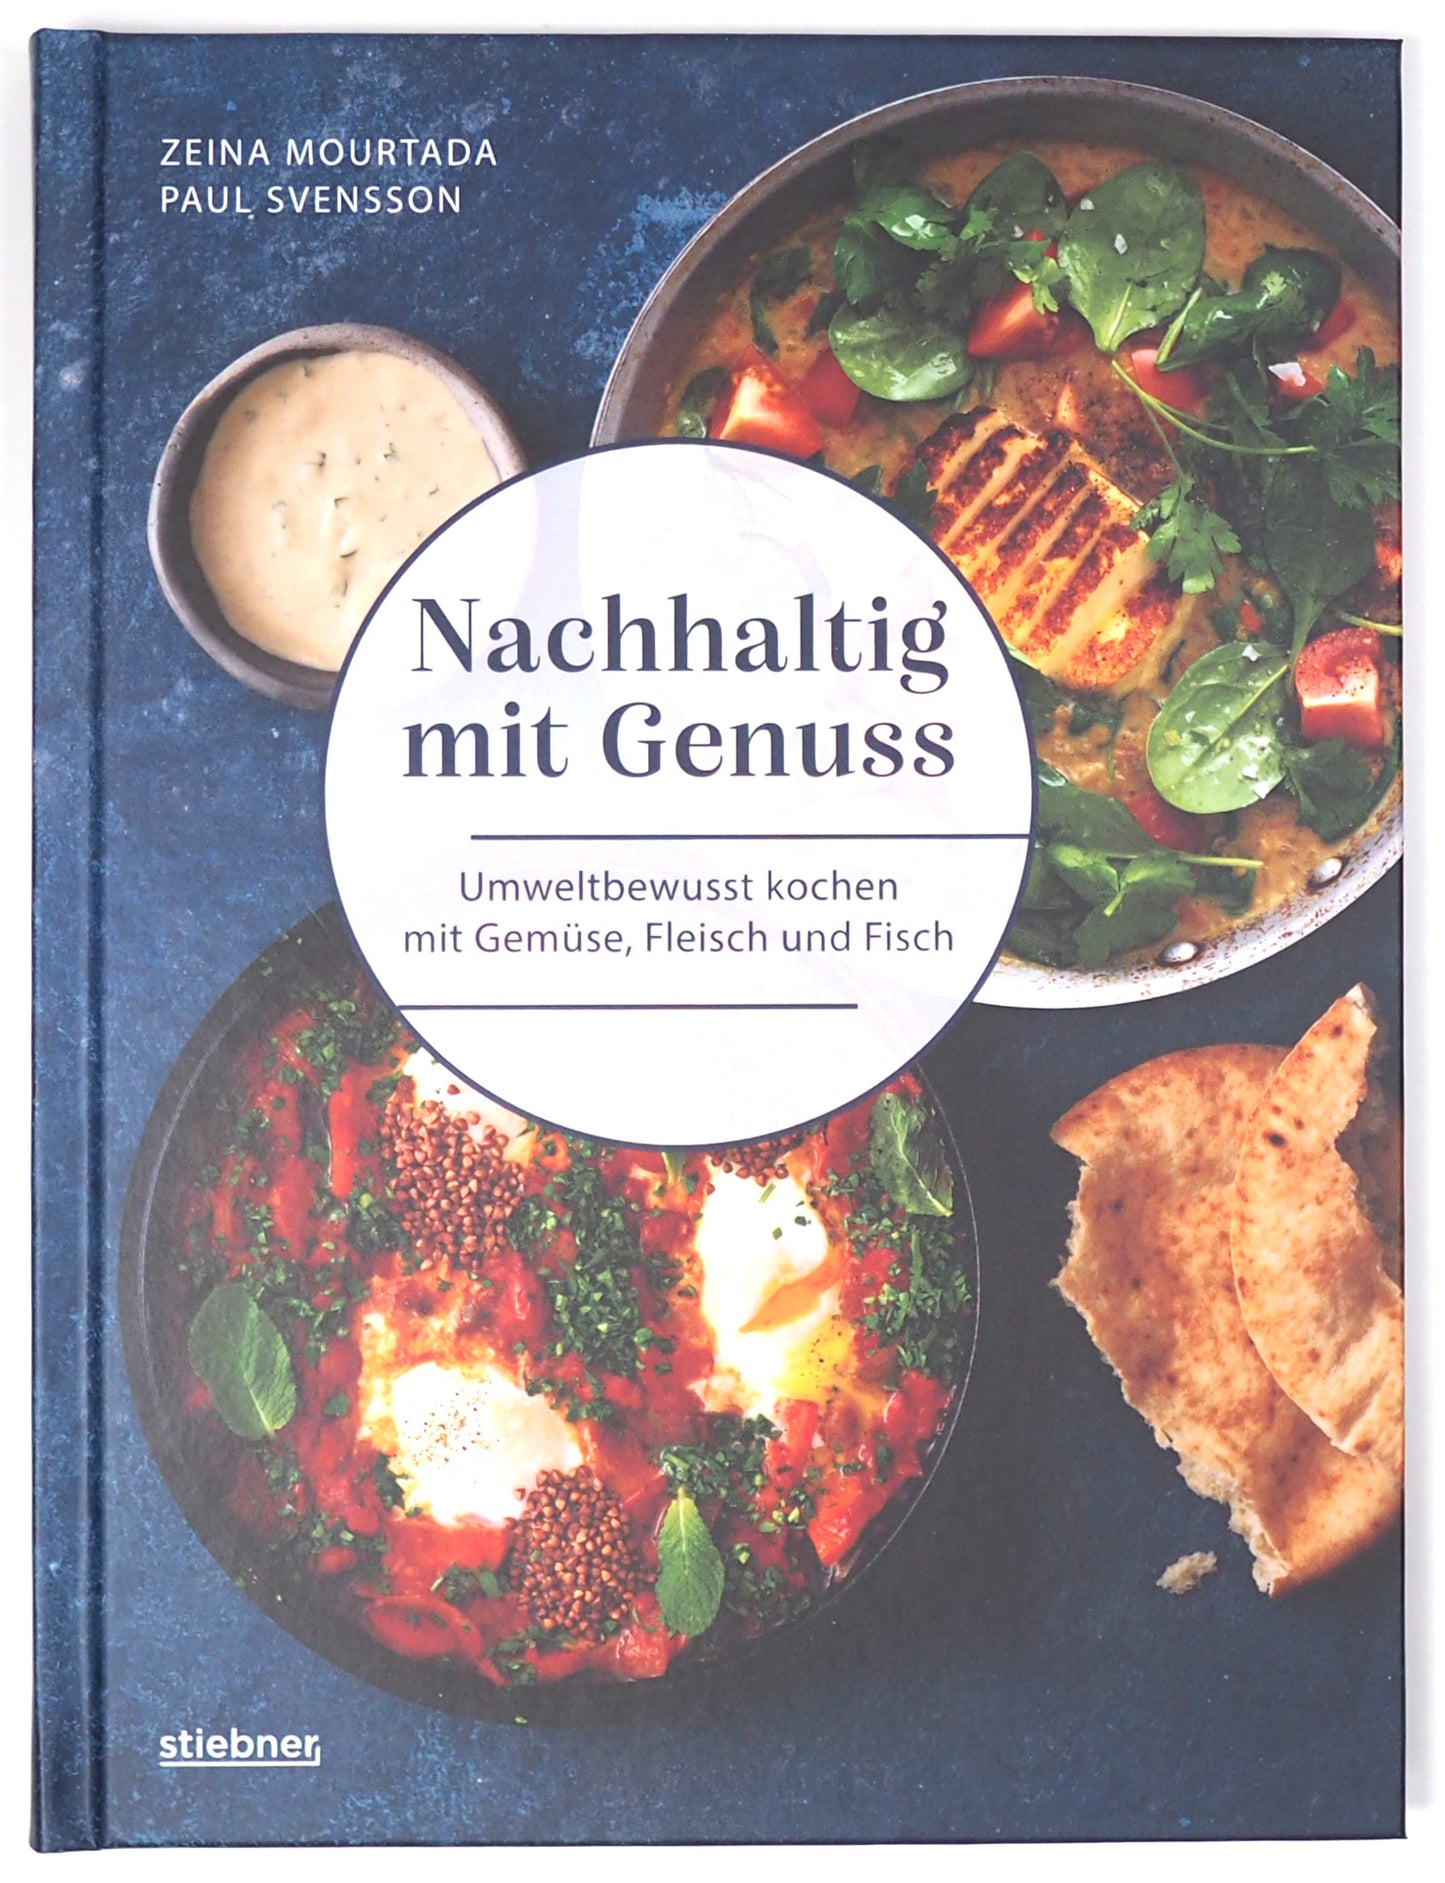 Nachhaltig mit Genuss by Paul Svensson; Zeina Mourtada - German Edition -